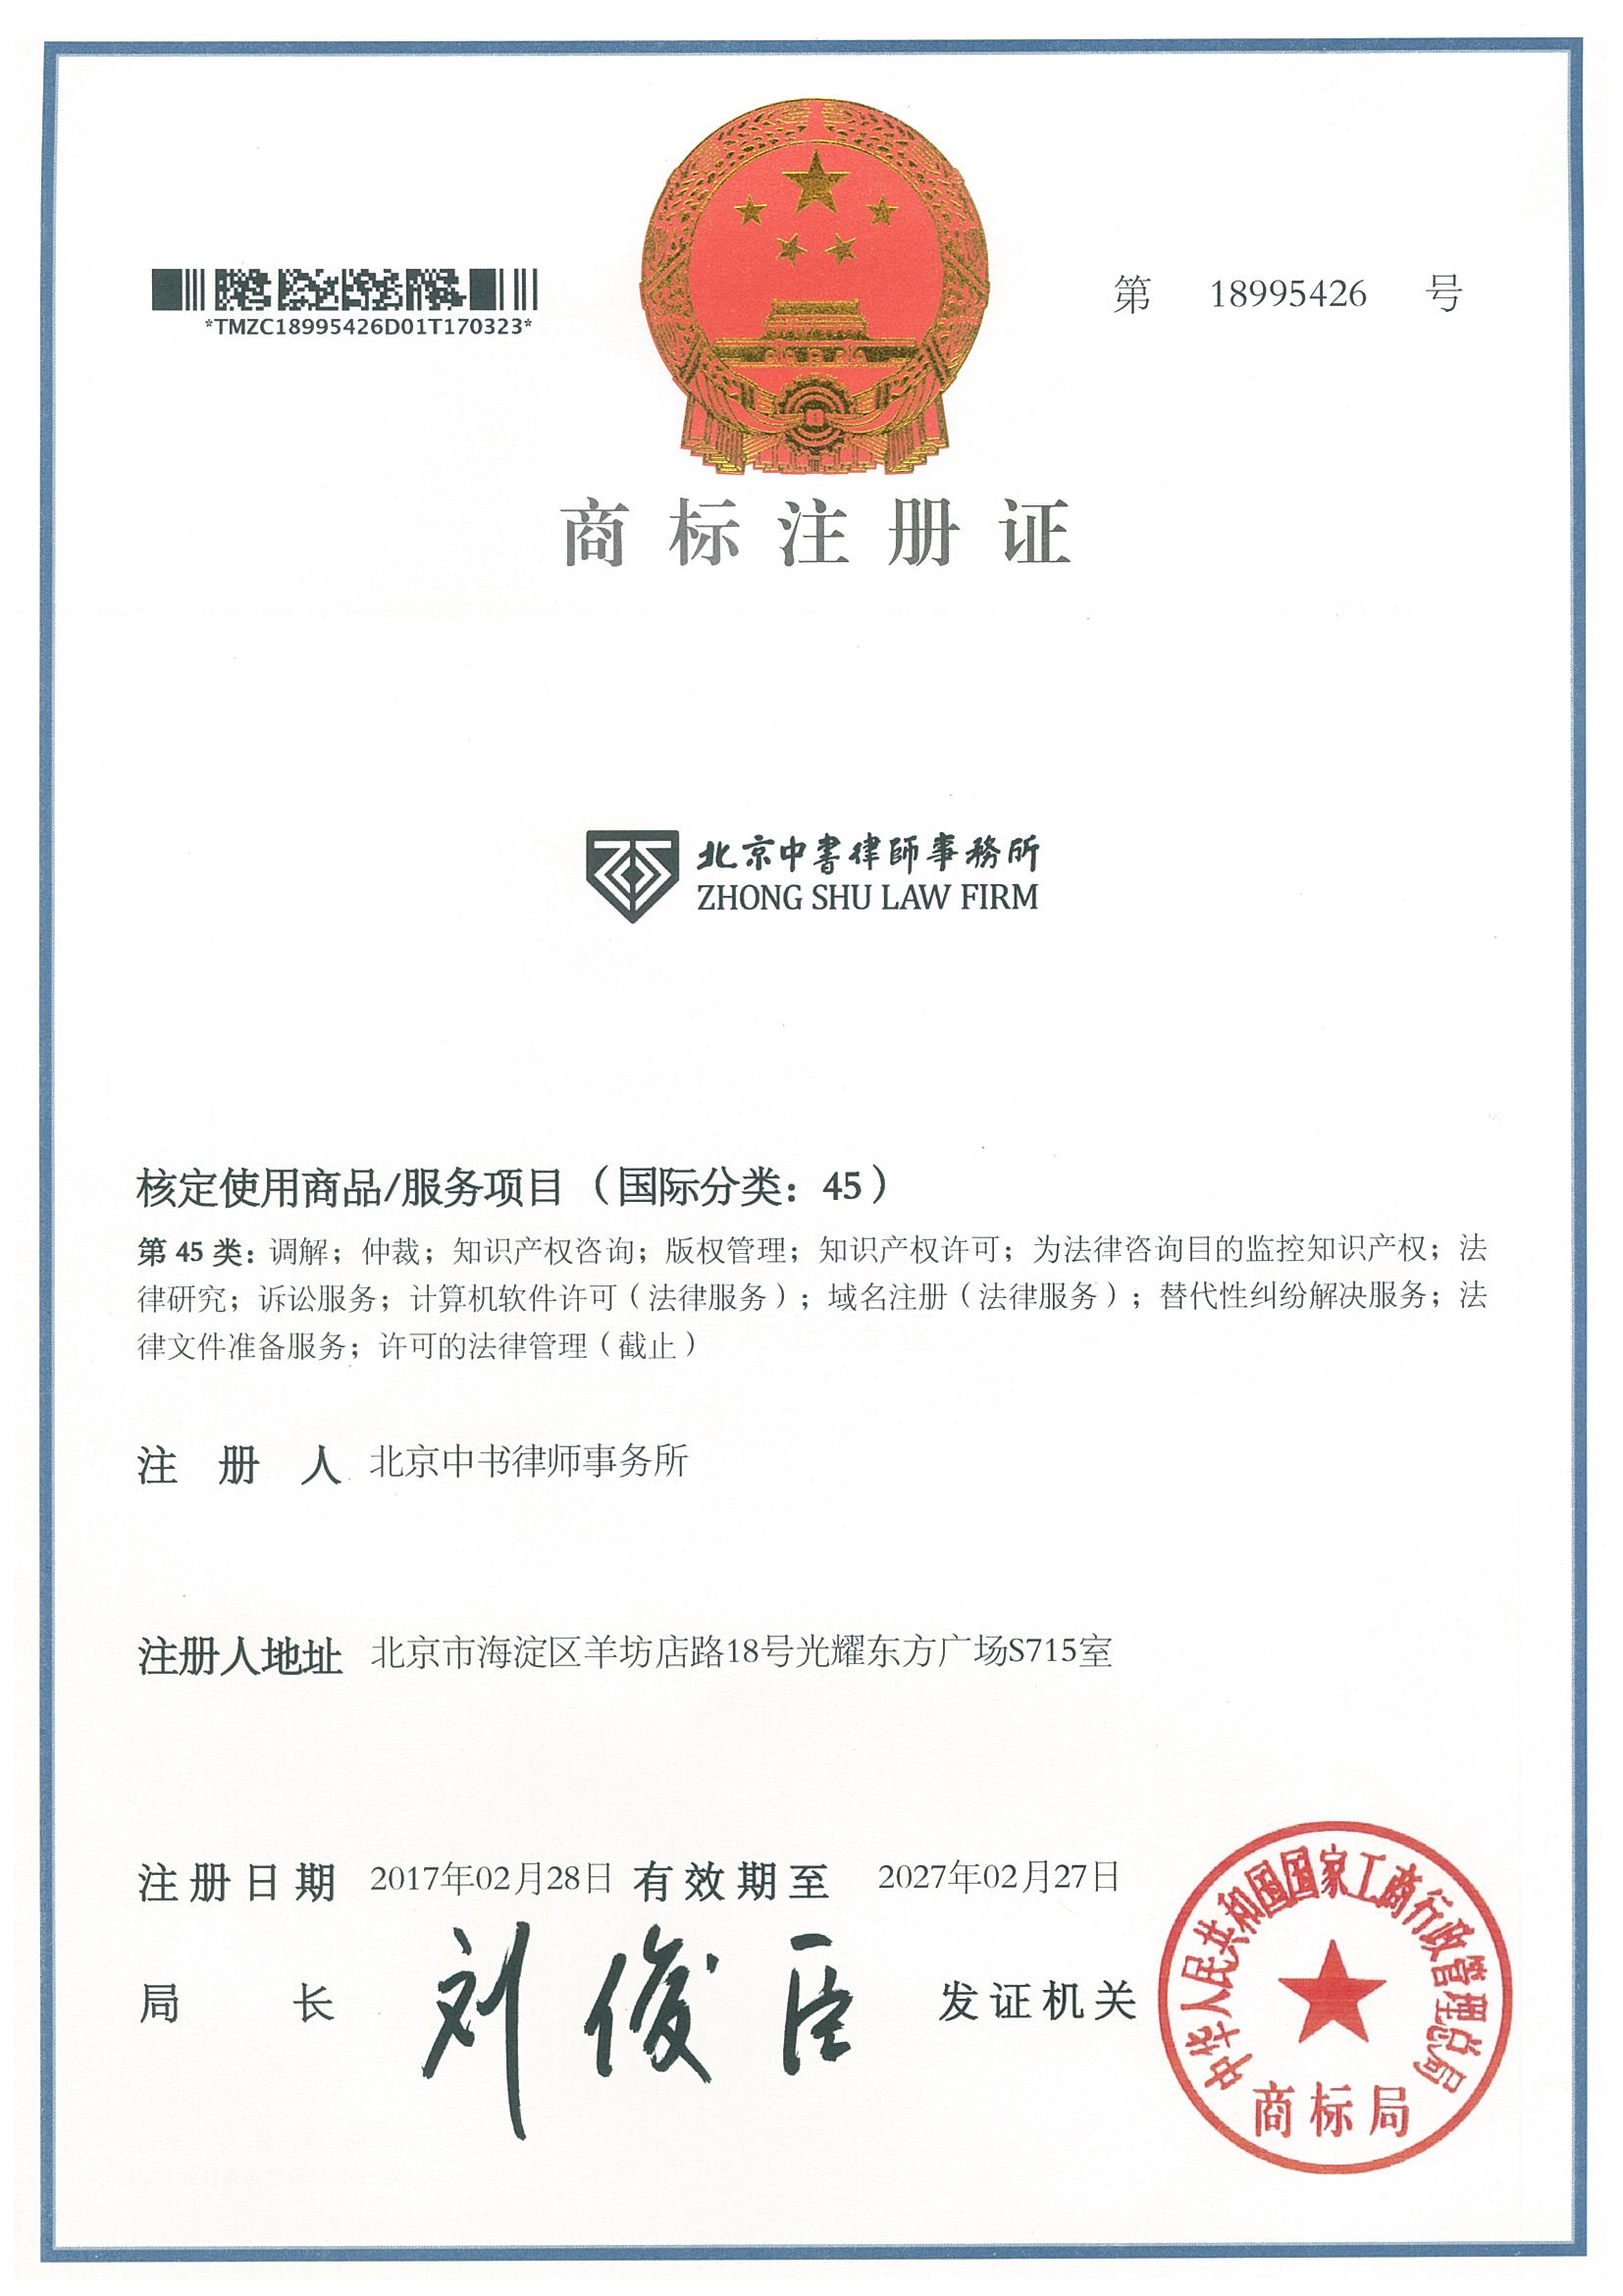 信息中心-中书律师事务所取得国家商标注册证